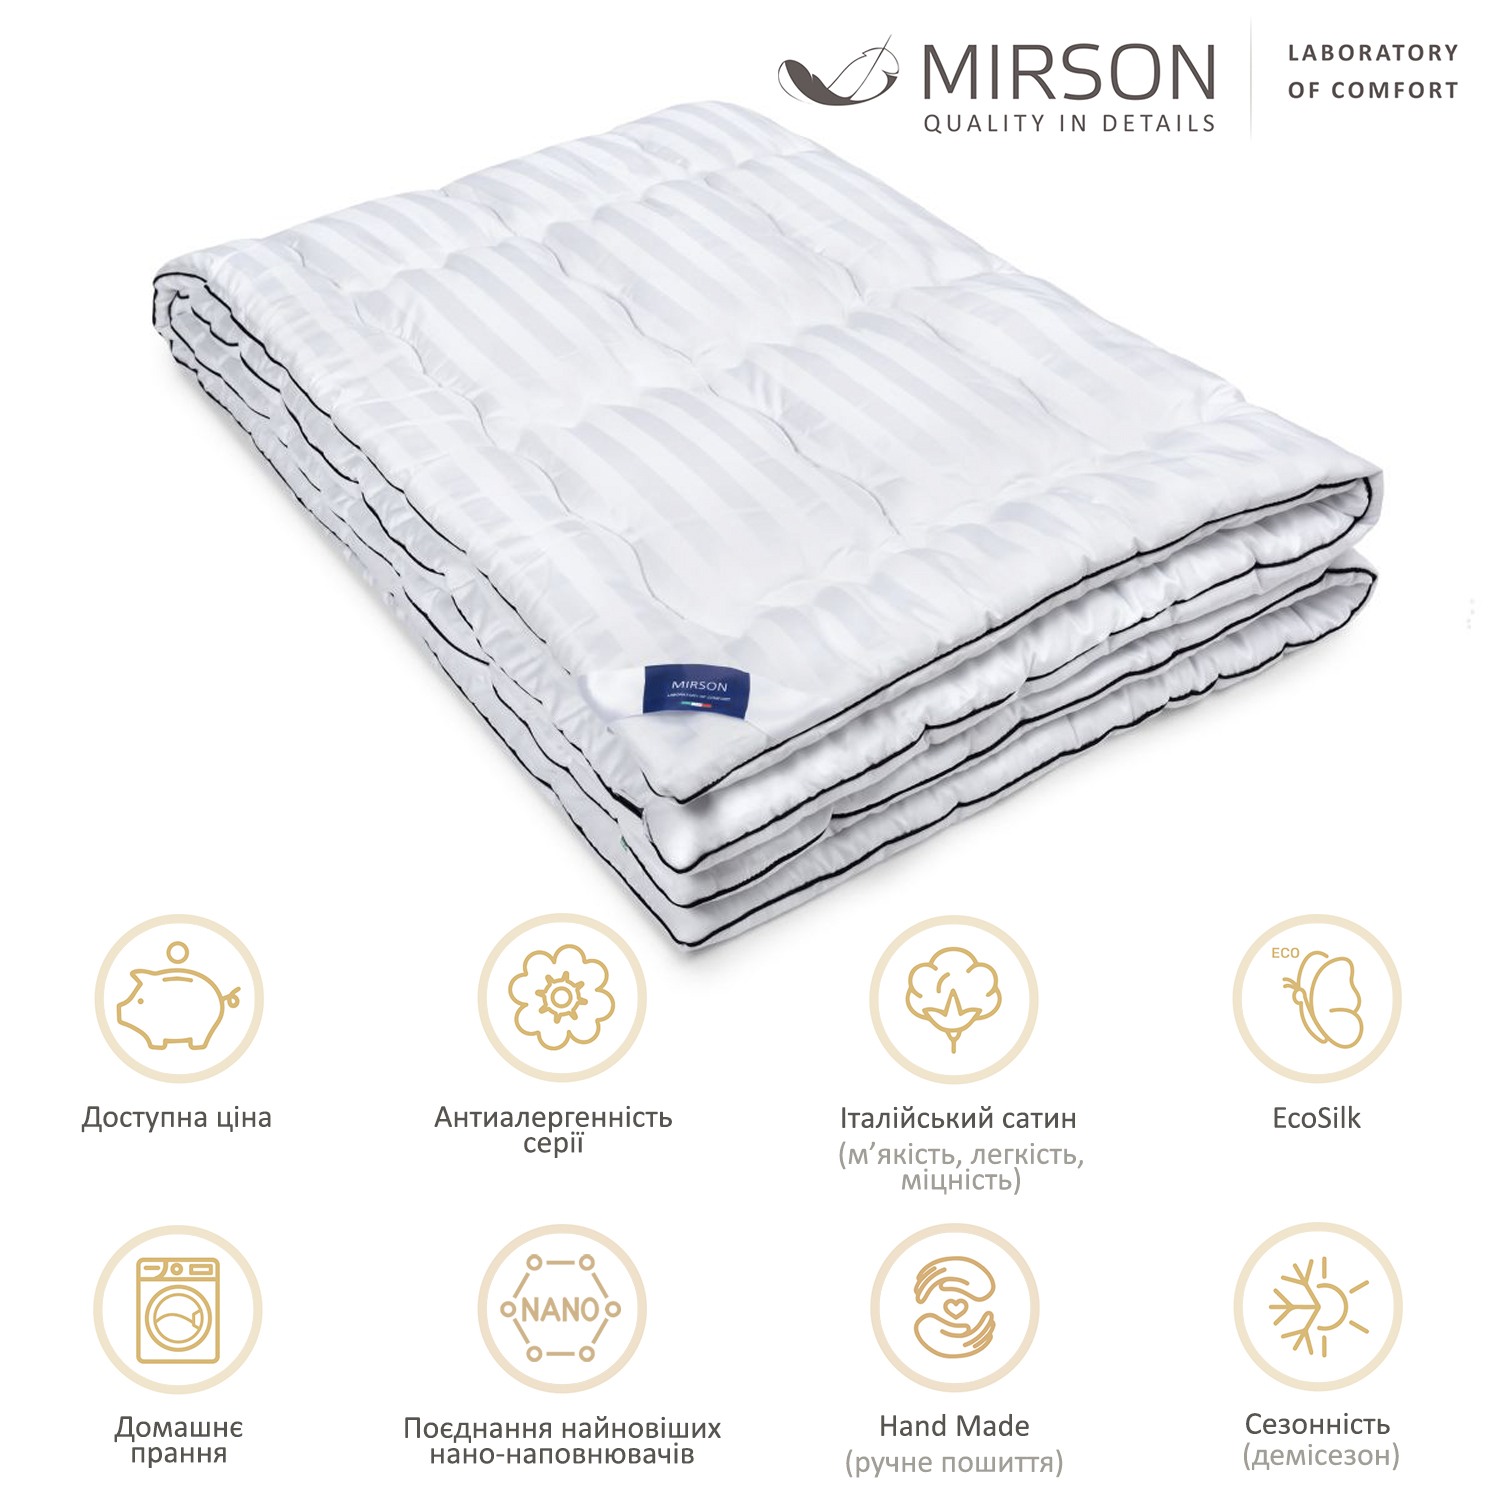 Одеяло антиаллергенное MirSon Royal Pearl Hand Made EcoSilk №066, демисезонное, 220x240 см, белое - фото 5